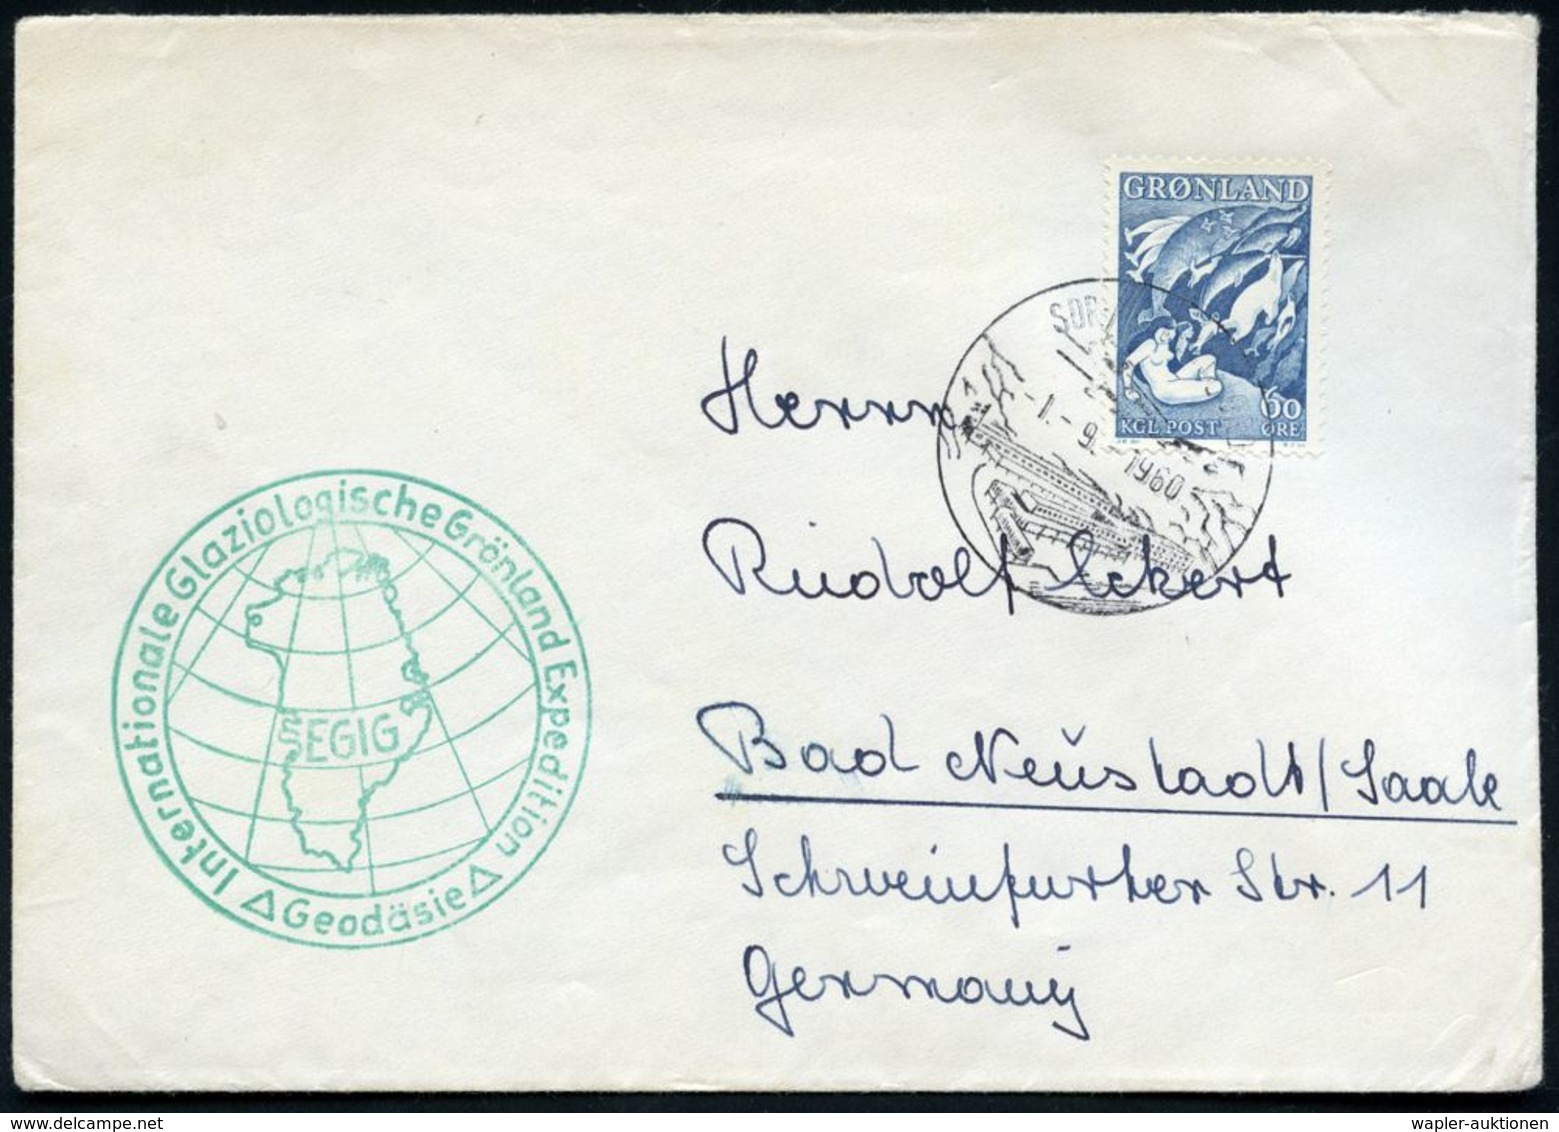 GRÖNLAND 1960 (1.9.) HWSt.: SDR. STRÖMFJORD (Gebäude) A.EF 60 Ö. "Mutter Des Meeers" (Wal-Motiv!) + Grüner HdN: Internat - Spedizioni Artiche